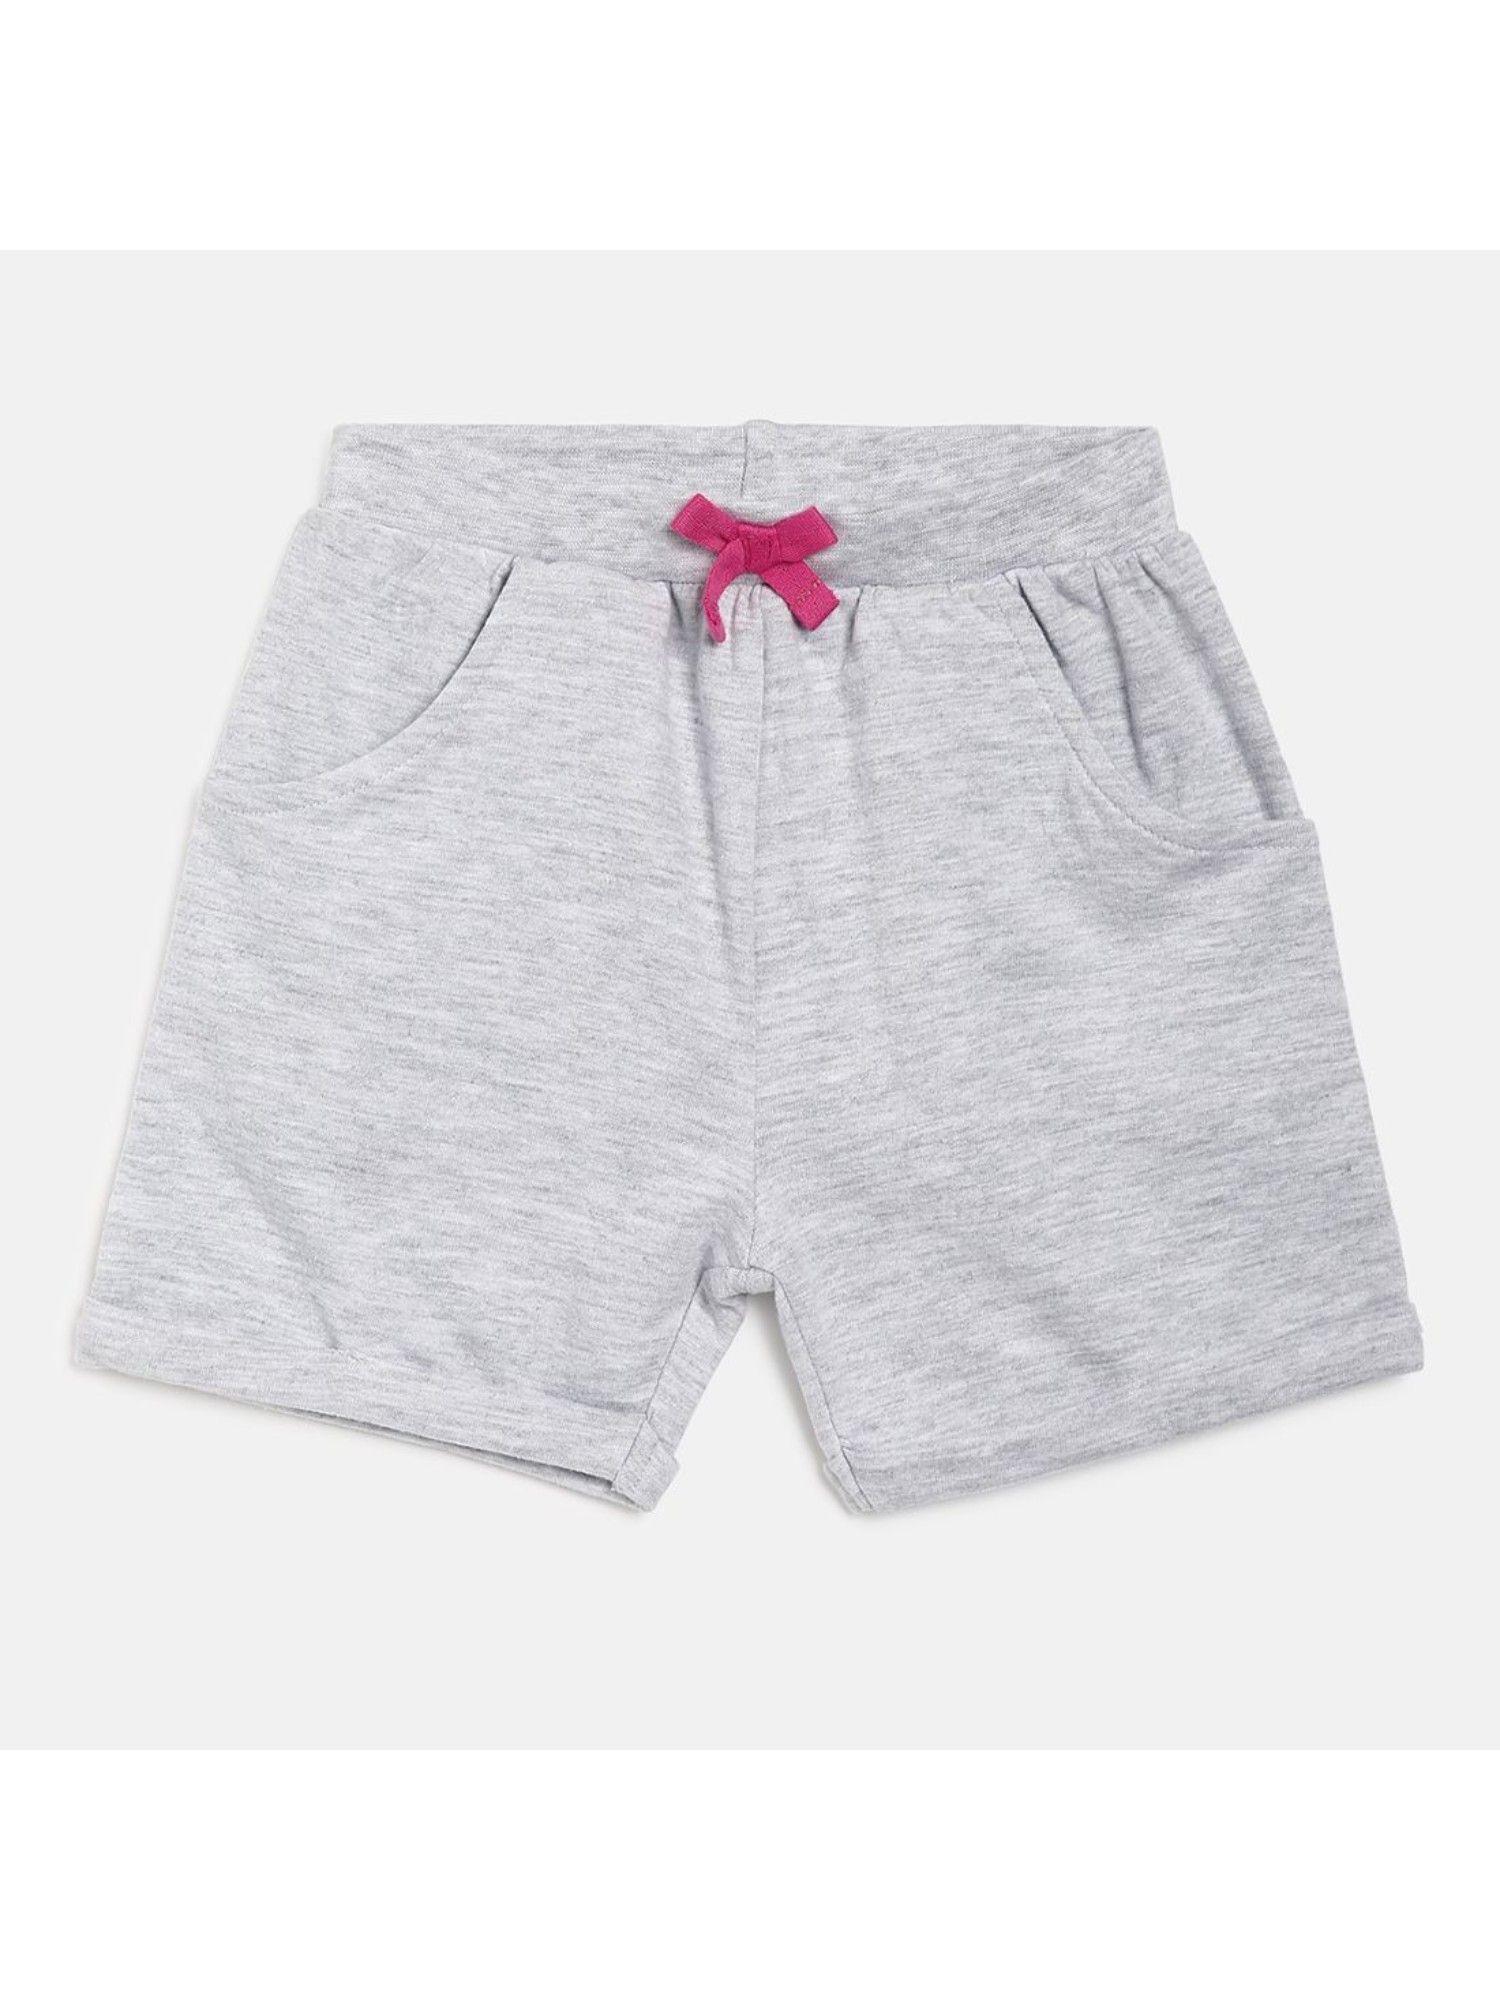 kids girls grey shorts